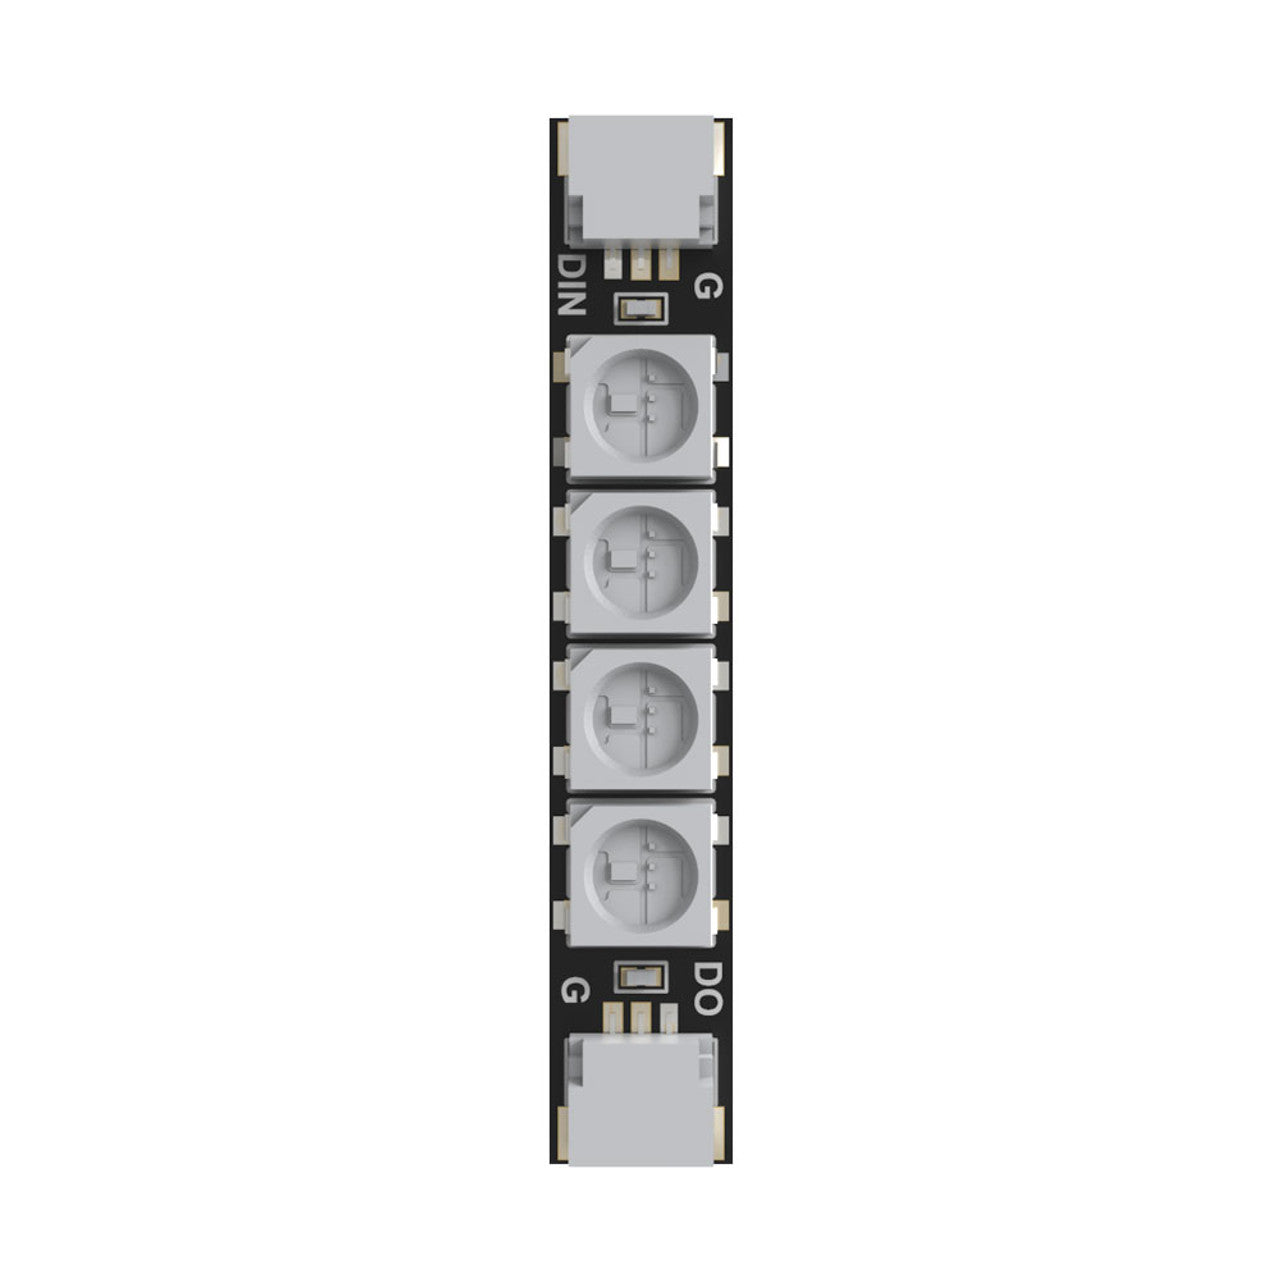 SpeedyBee Programable ws2812 Arm LEDs (4 Pcs)